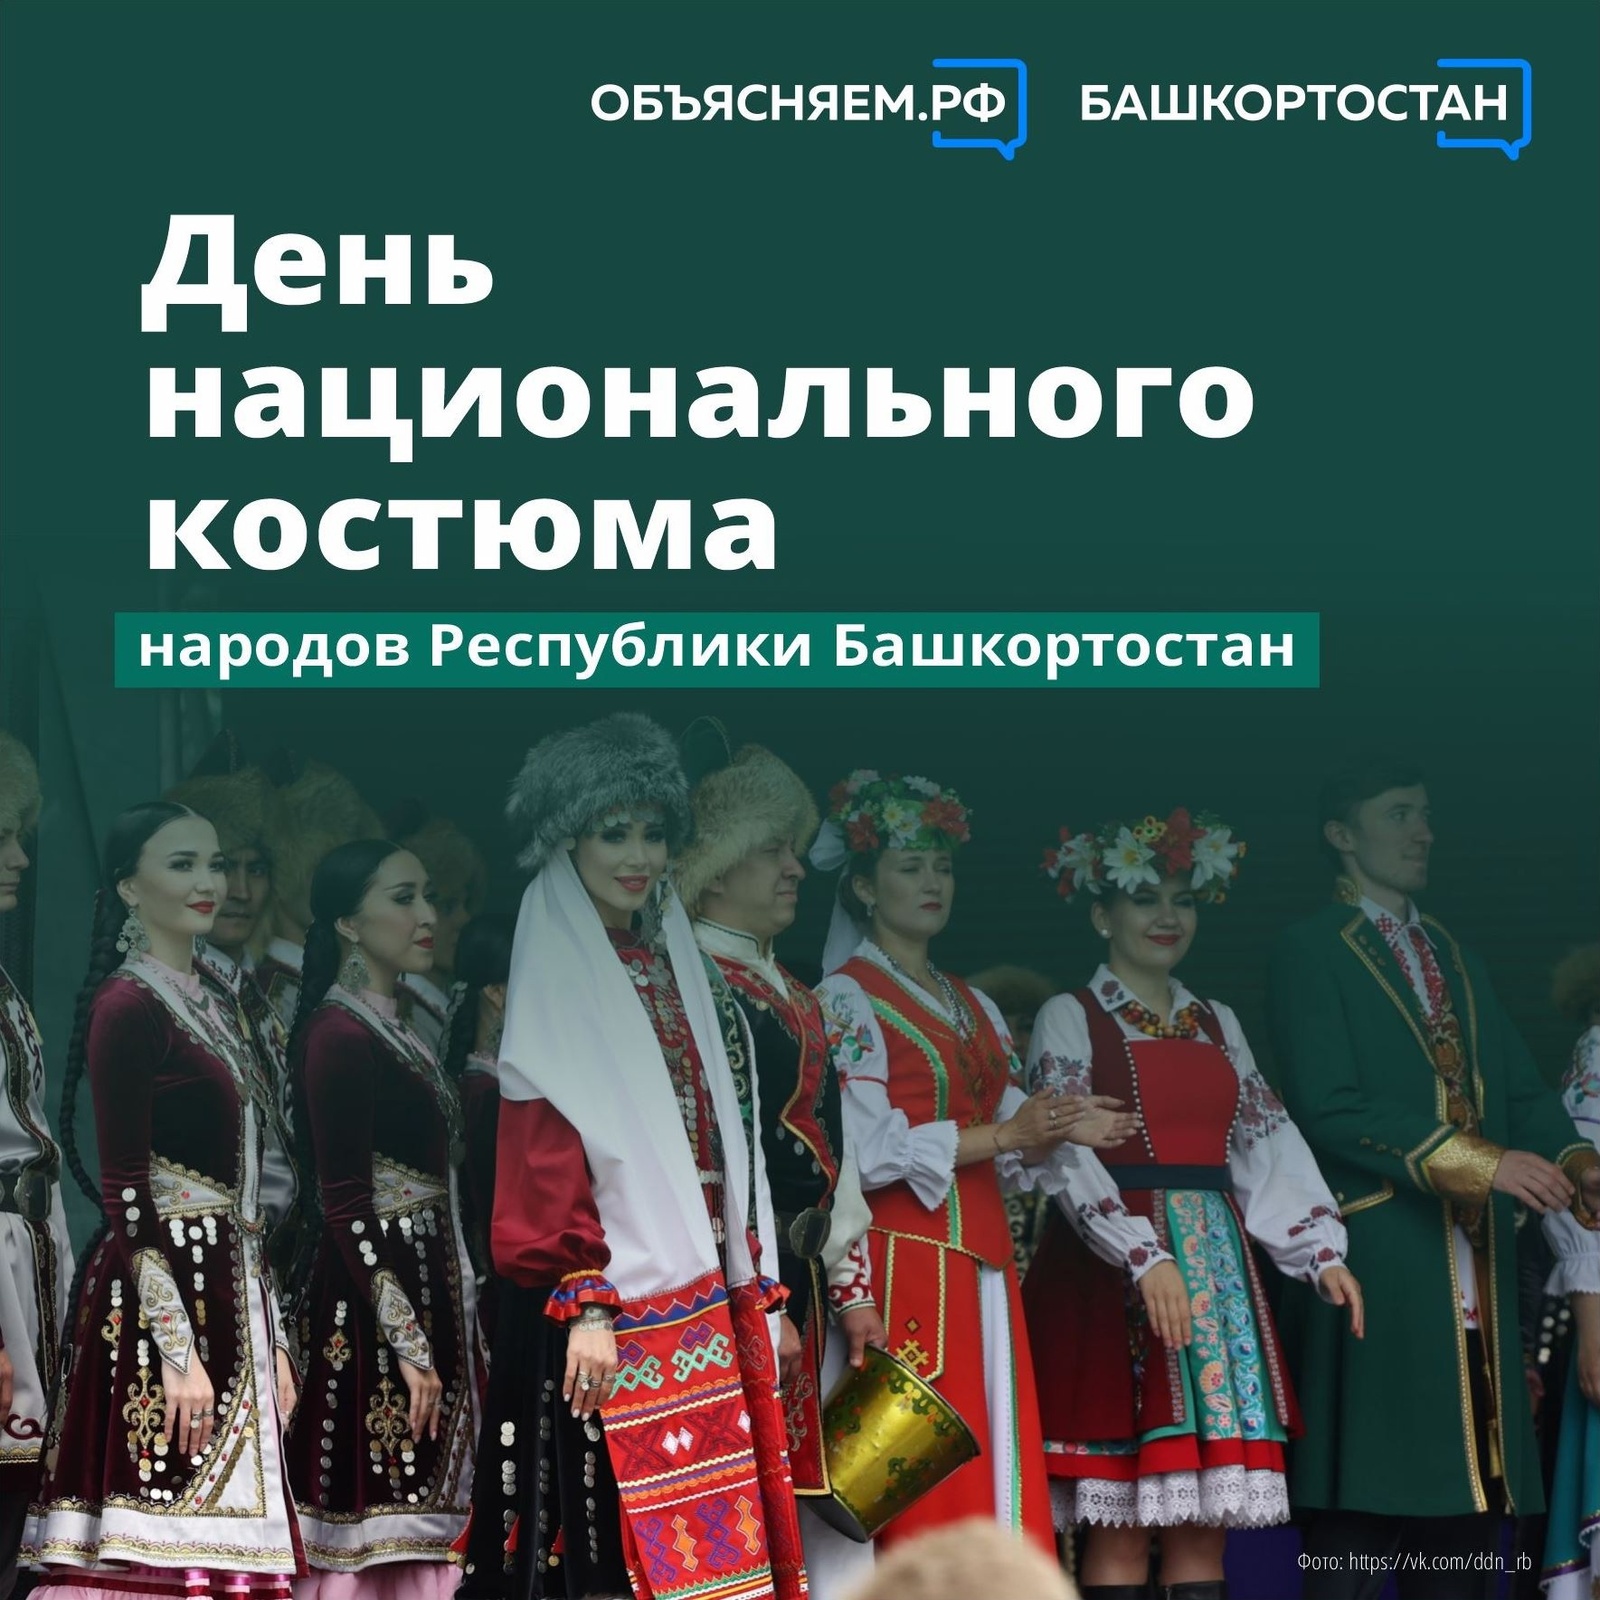 День национального костюма народов Республики Башкортостан отмечают дважды в год — в третью пятницу апреля и вторую пятницу сентября, начиная с 2020 года